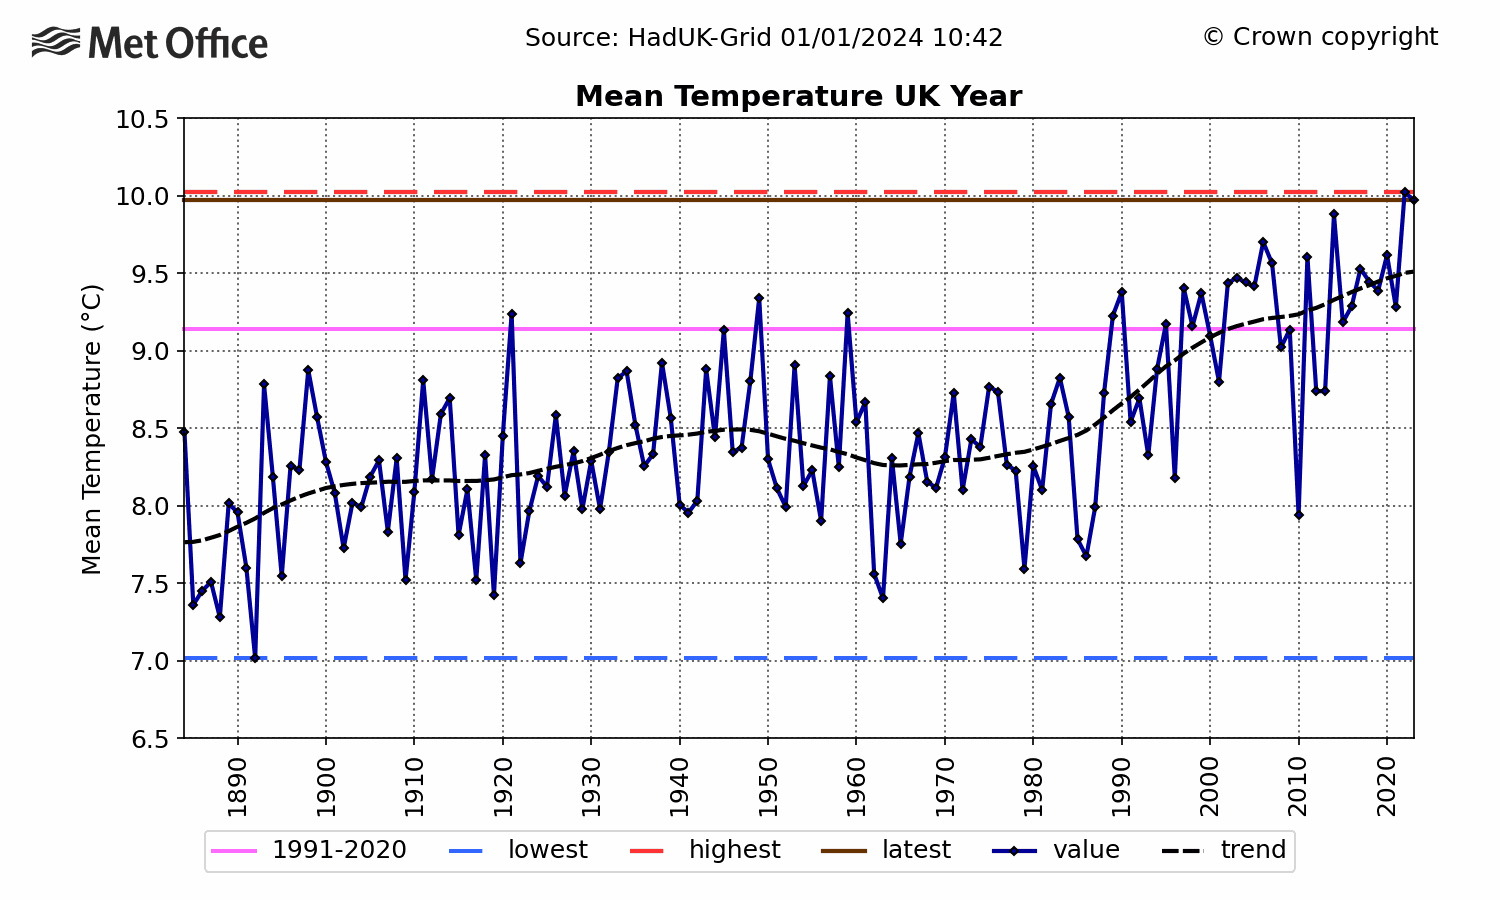 UK Mean temperature - Annual